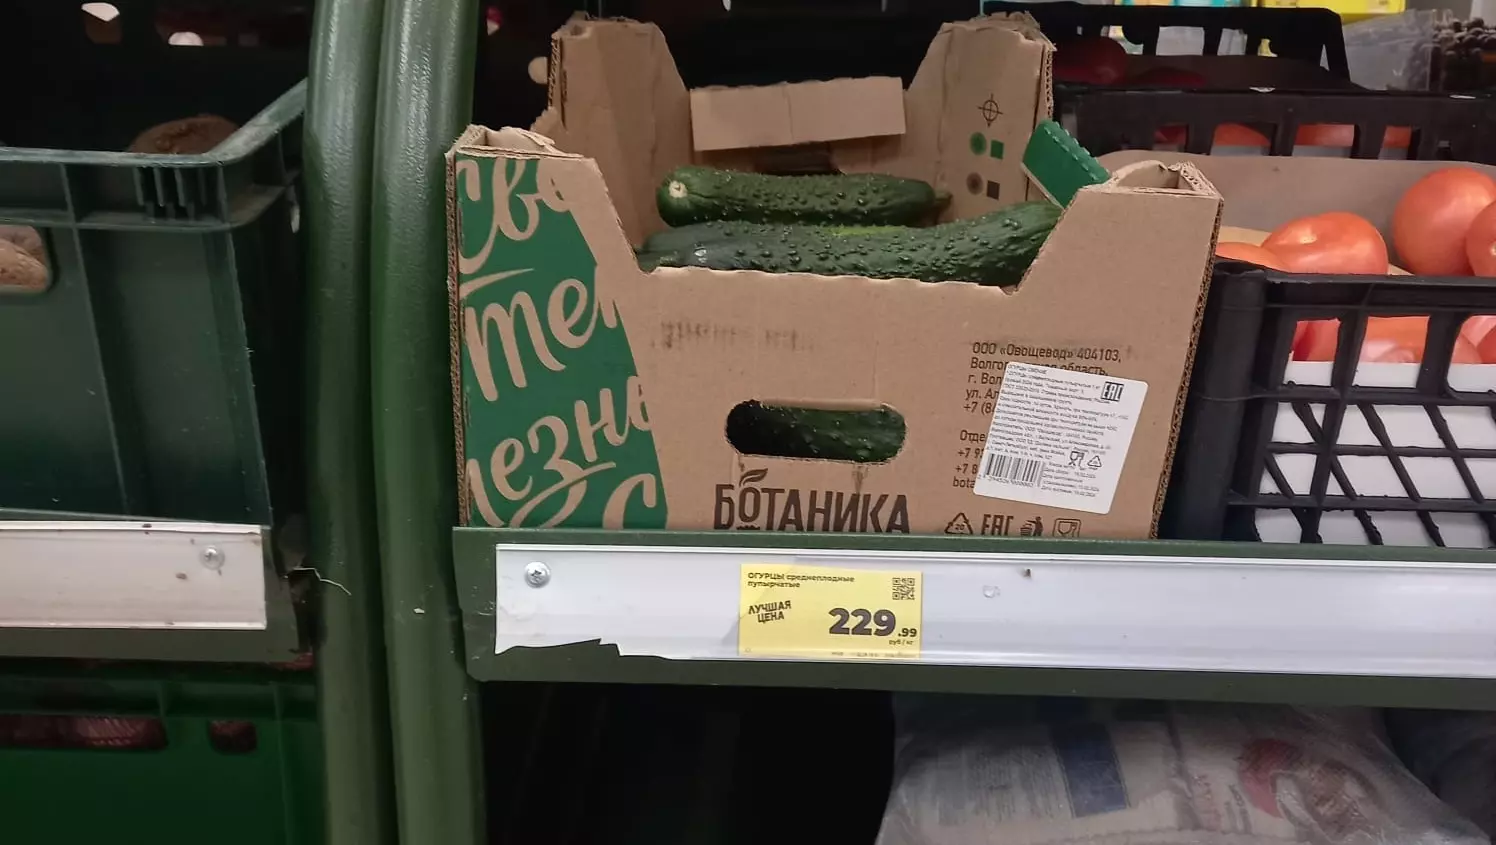 Наших не больше 15%: производитель объяснил заоблачные цены на ставропольские огурцы